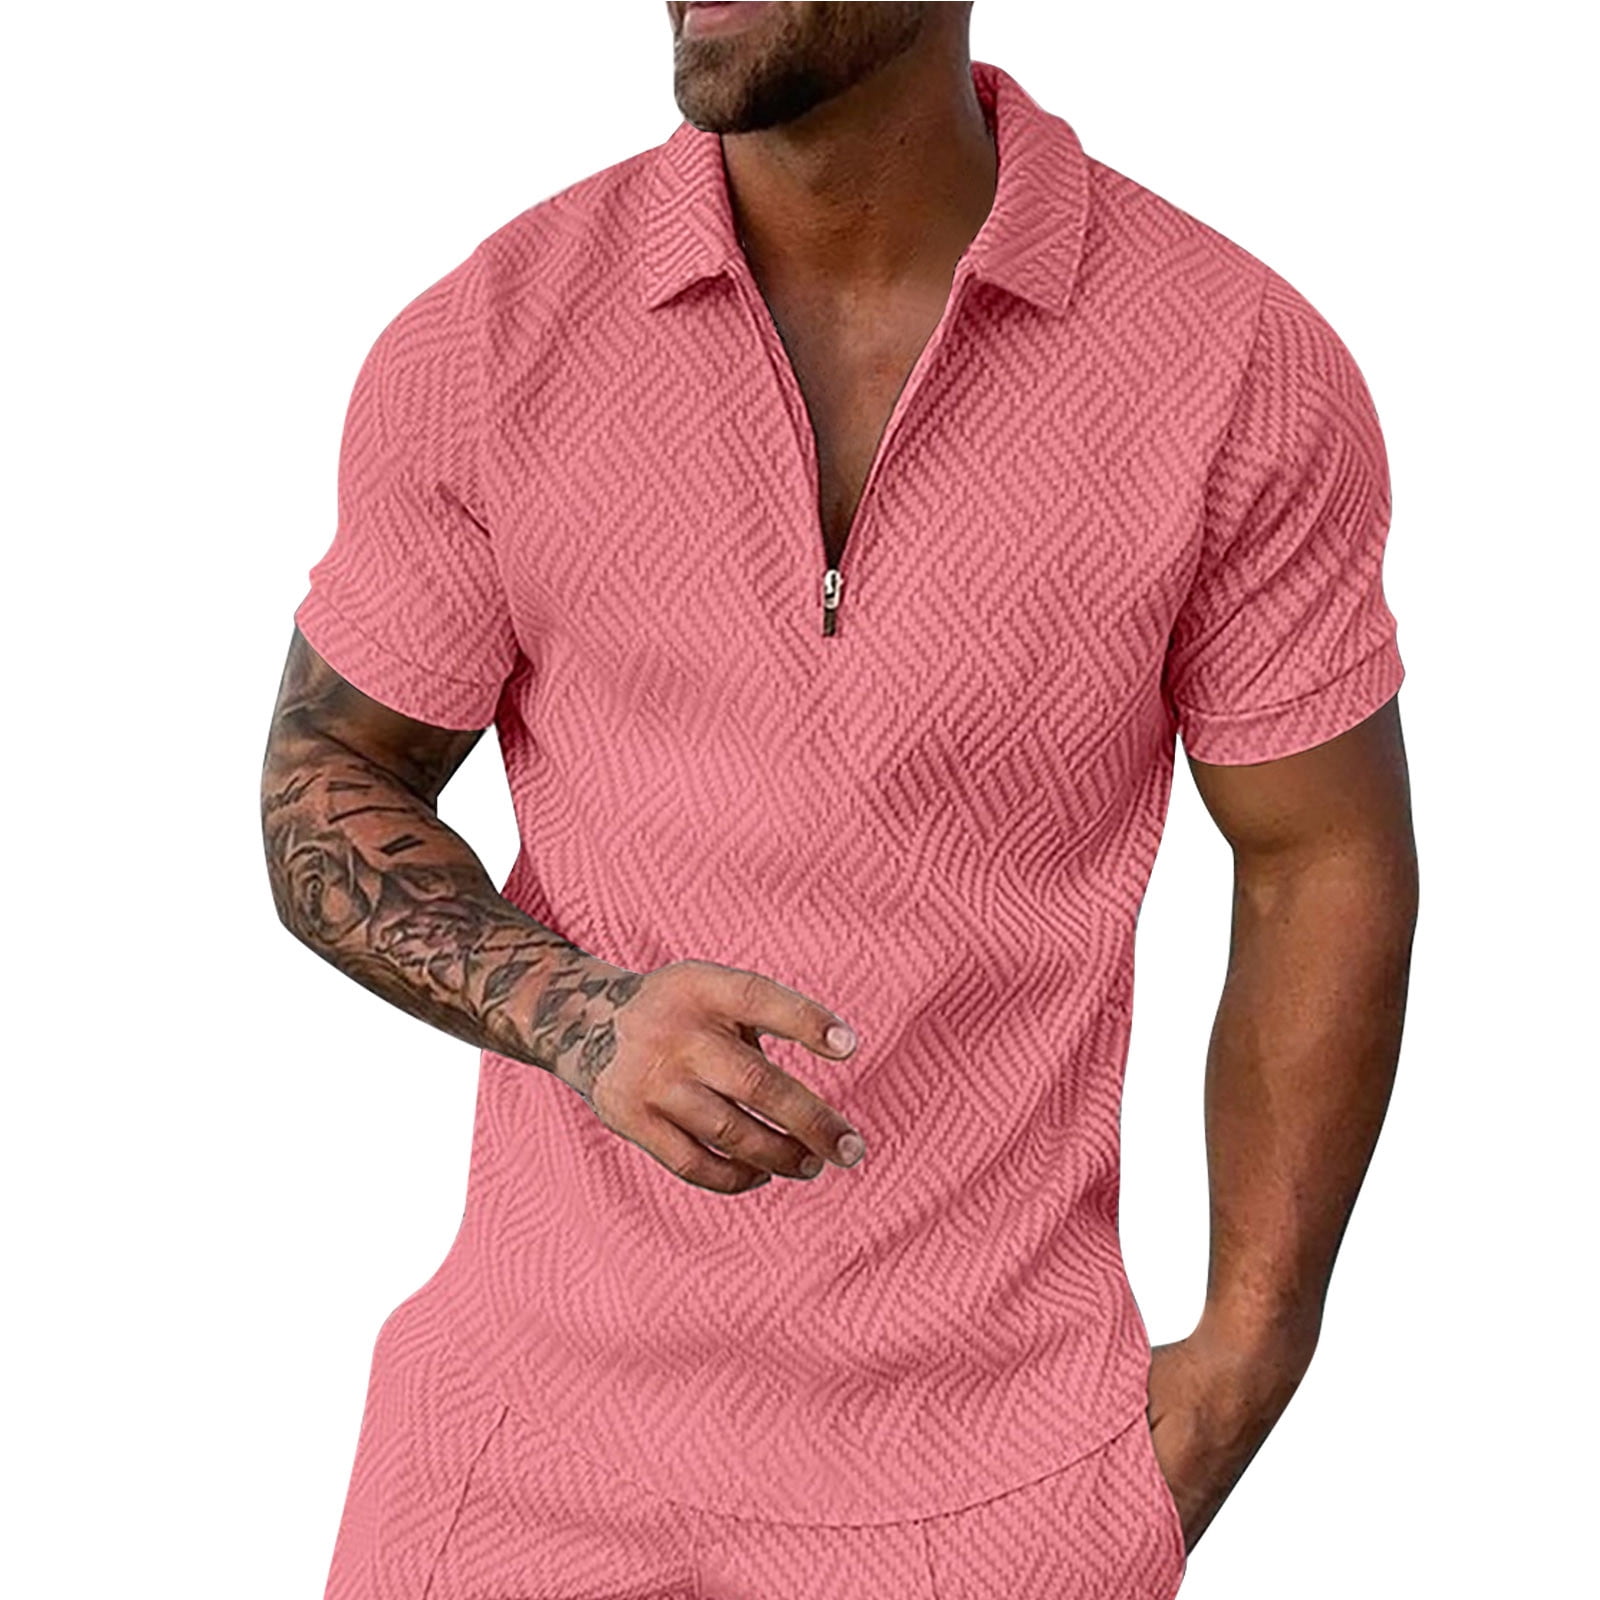 B91xZ Work Shirts For Men Men's Shirt Summer Outfits Casual Zipper Up Short  Sleeve Shirt Suit For Men Cropped T Shirts for Men Polo Shirts For Men Pink  XXL 